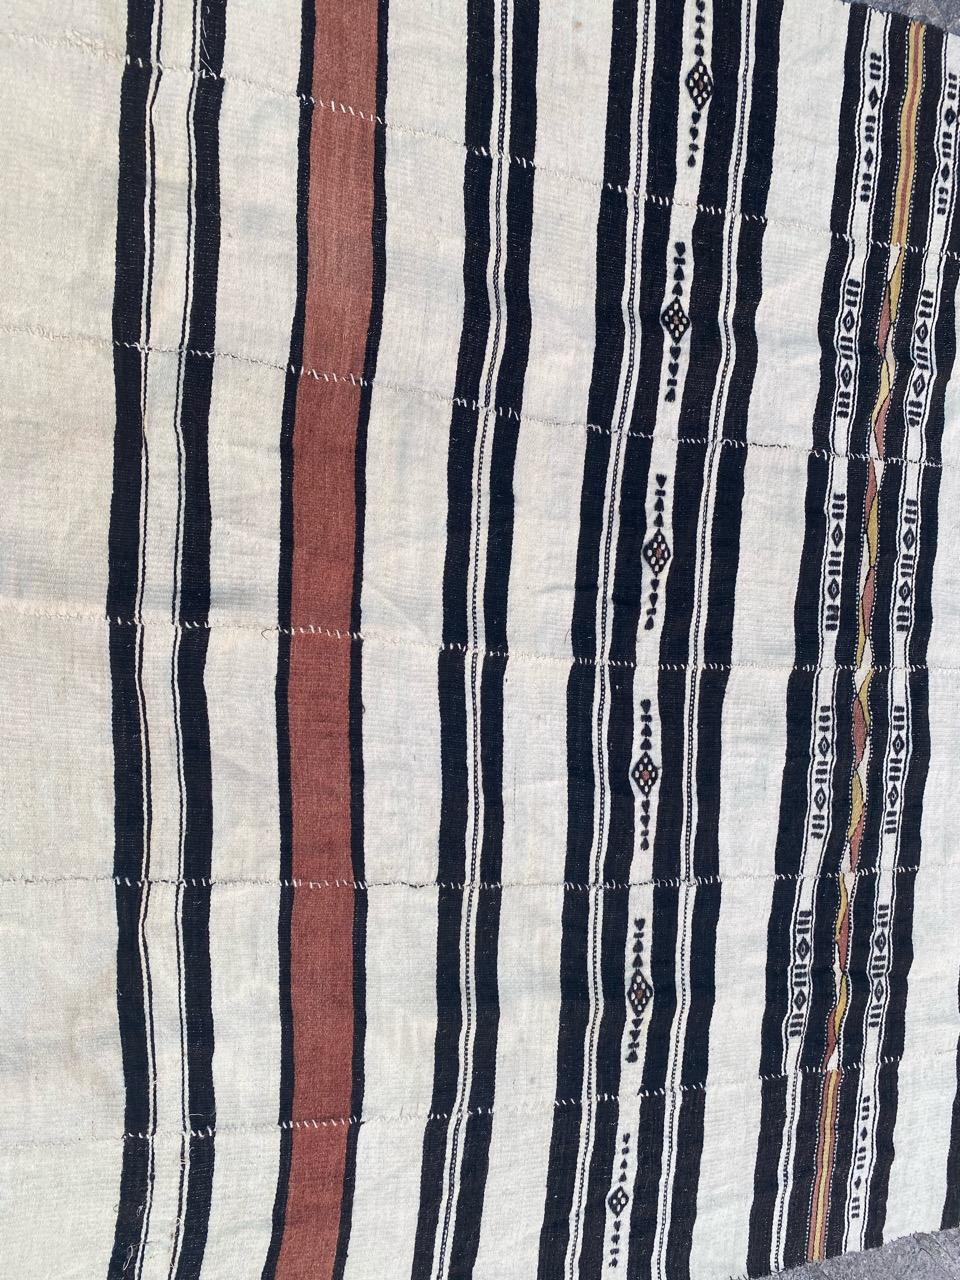 Très beau Kilim malien long du début du 20ème siècle avec un design géométrique tribal et des couleurs claires avec du blanc, du noir et de l'orange, entièrement tissé à la main avec de la laine sur une base de laine.

✨✨✨
